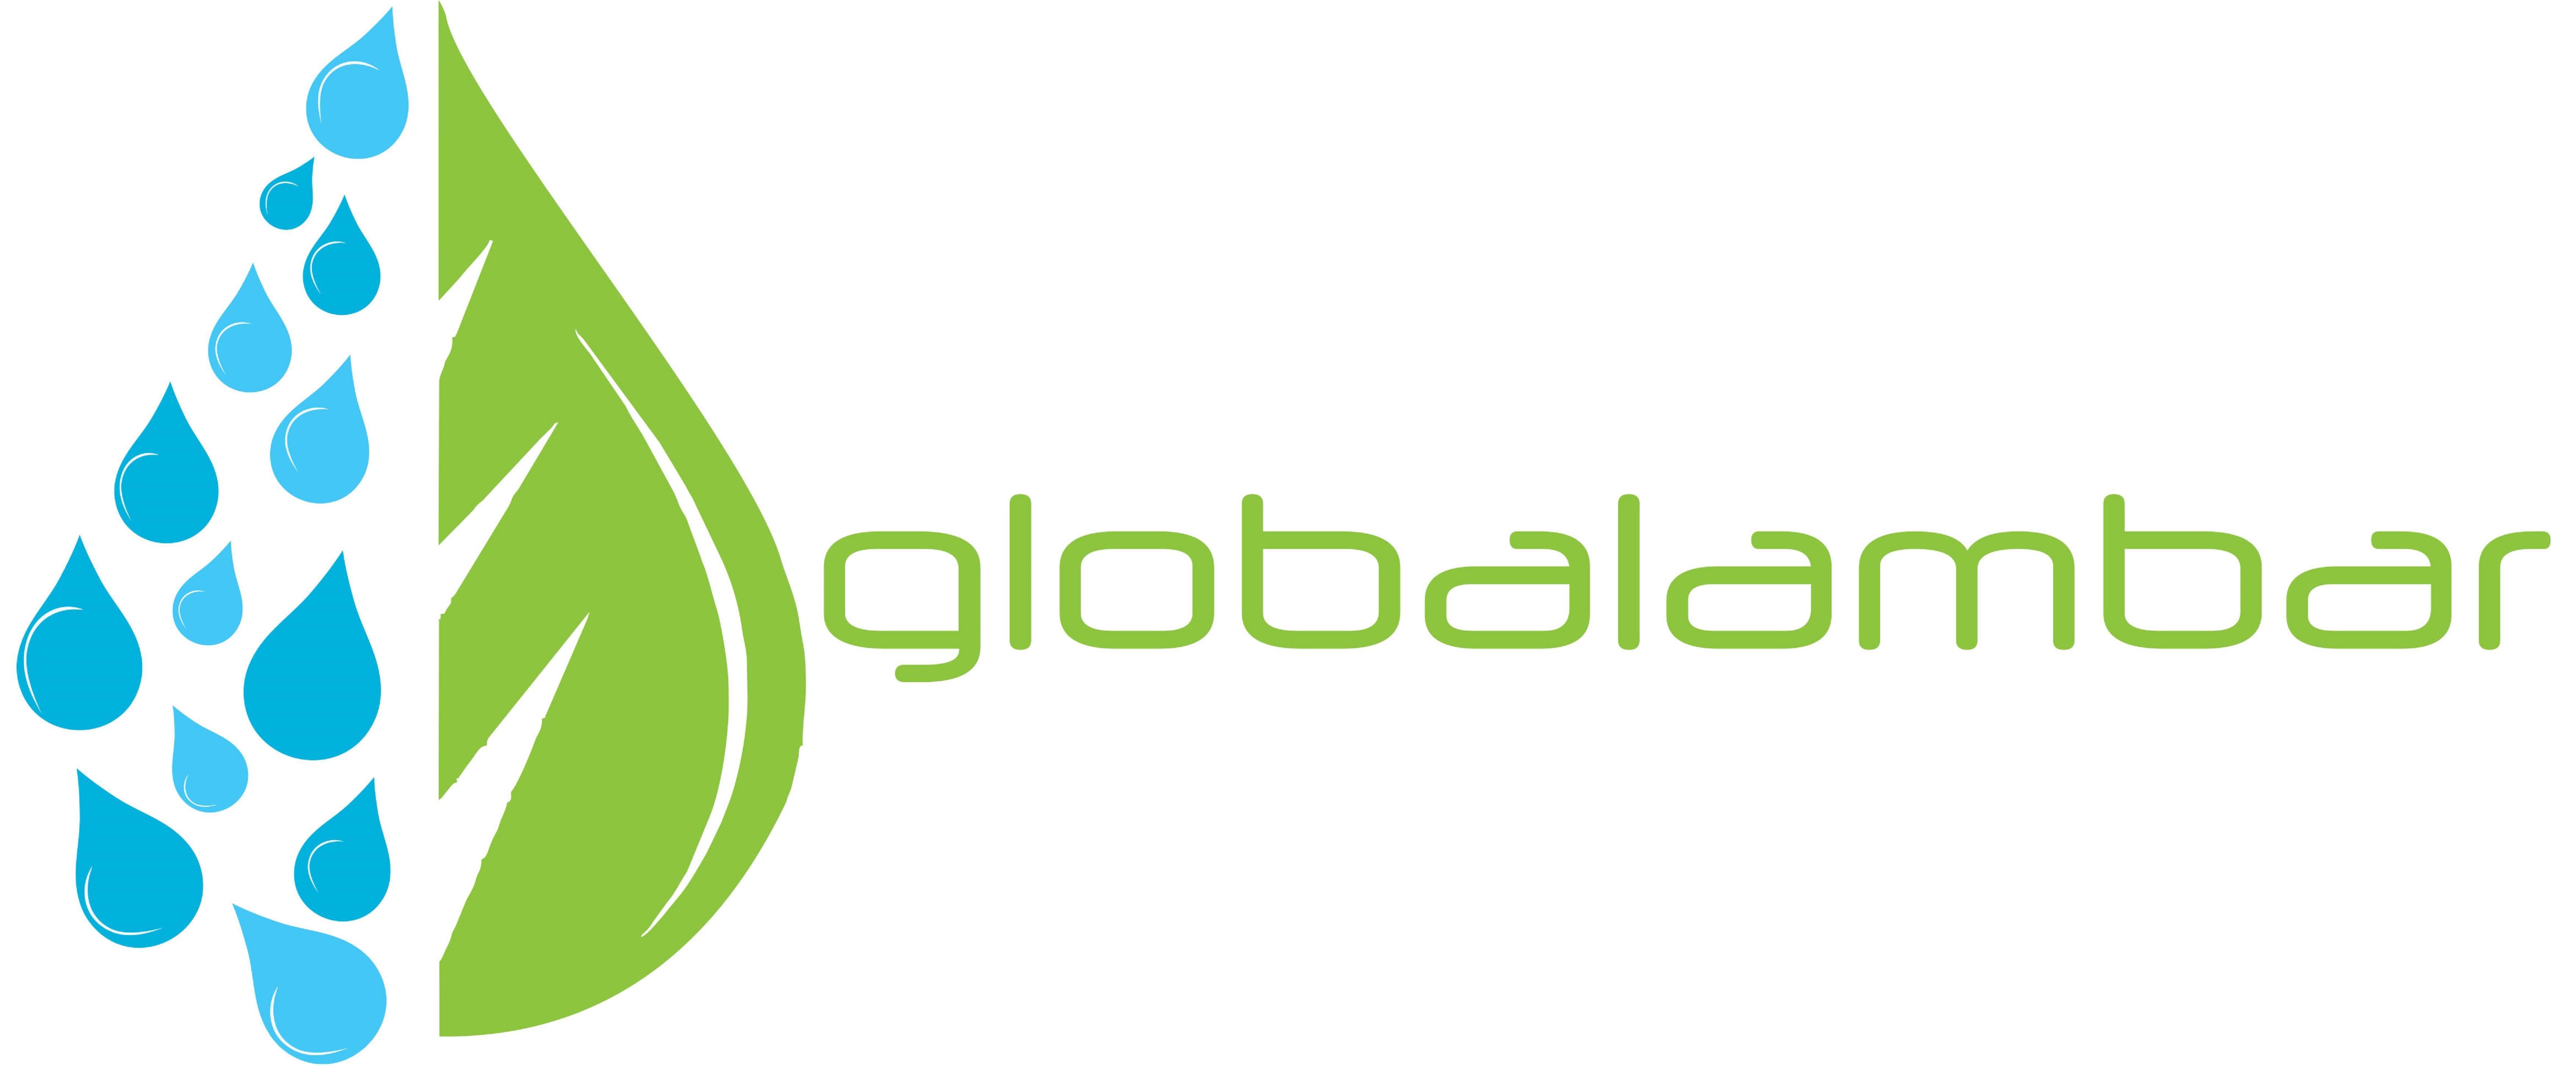 globalambar